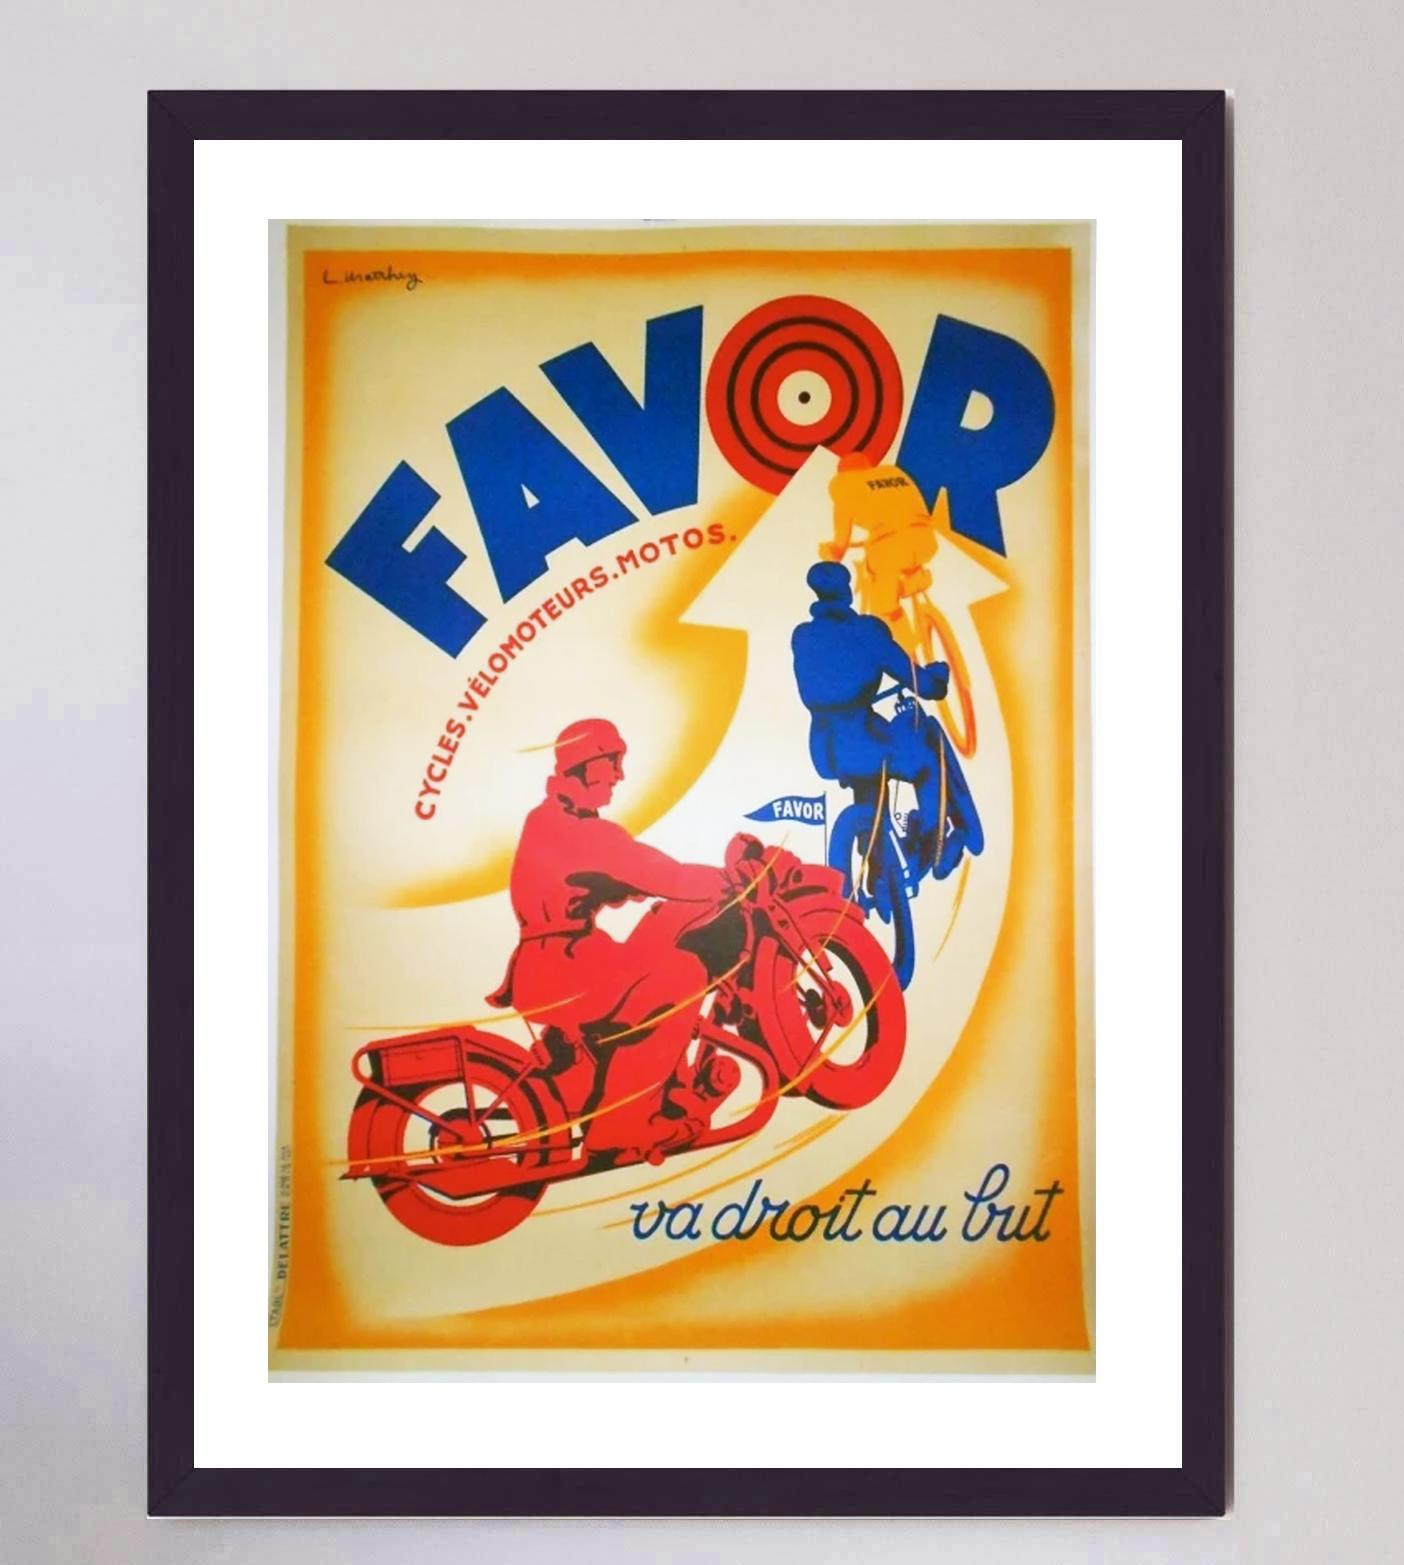 Absolut prächtige Original-Lithographie von 1928 für Favor. Das 1898 als Fahrradhersteller gegründete Unternehmen Favor ging zur Produktion von Motorrädern über und war bis in die 1970er Jahre hinein tätig. Dieses farbenfrohe und witzige Plakat mit